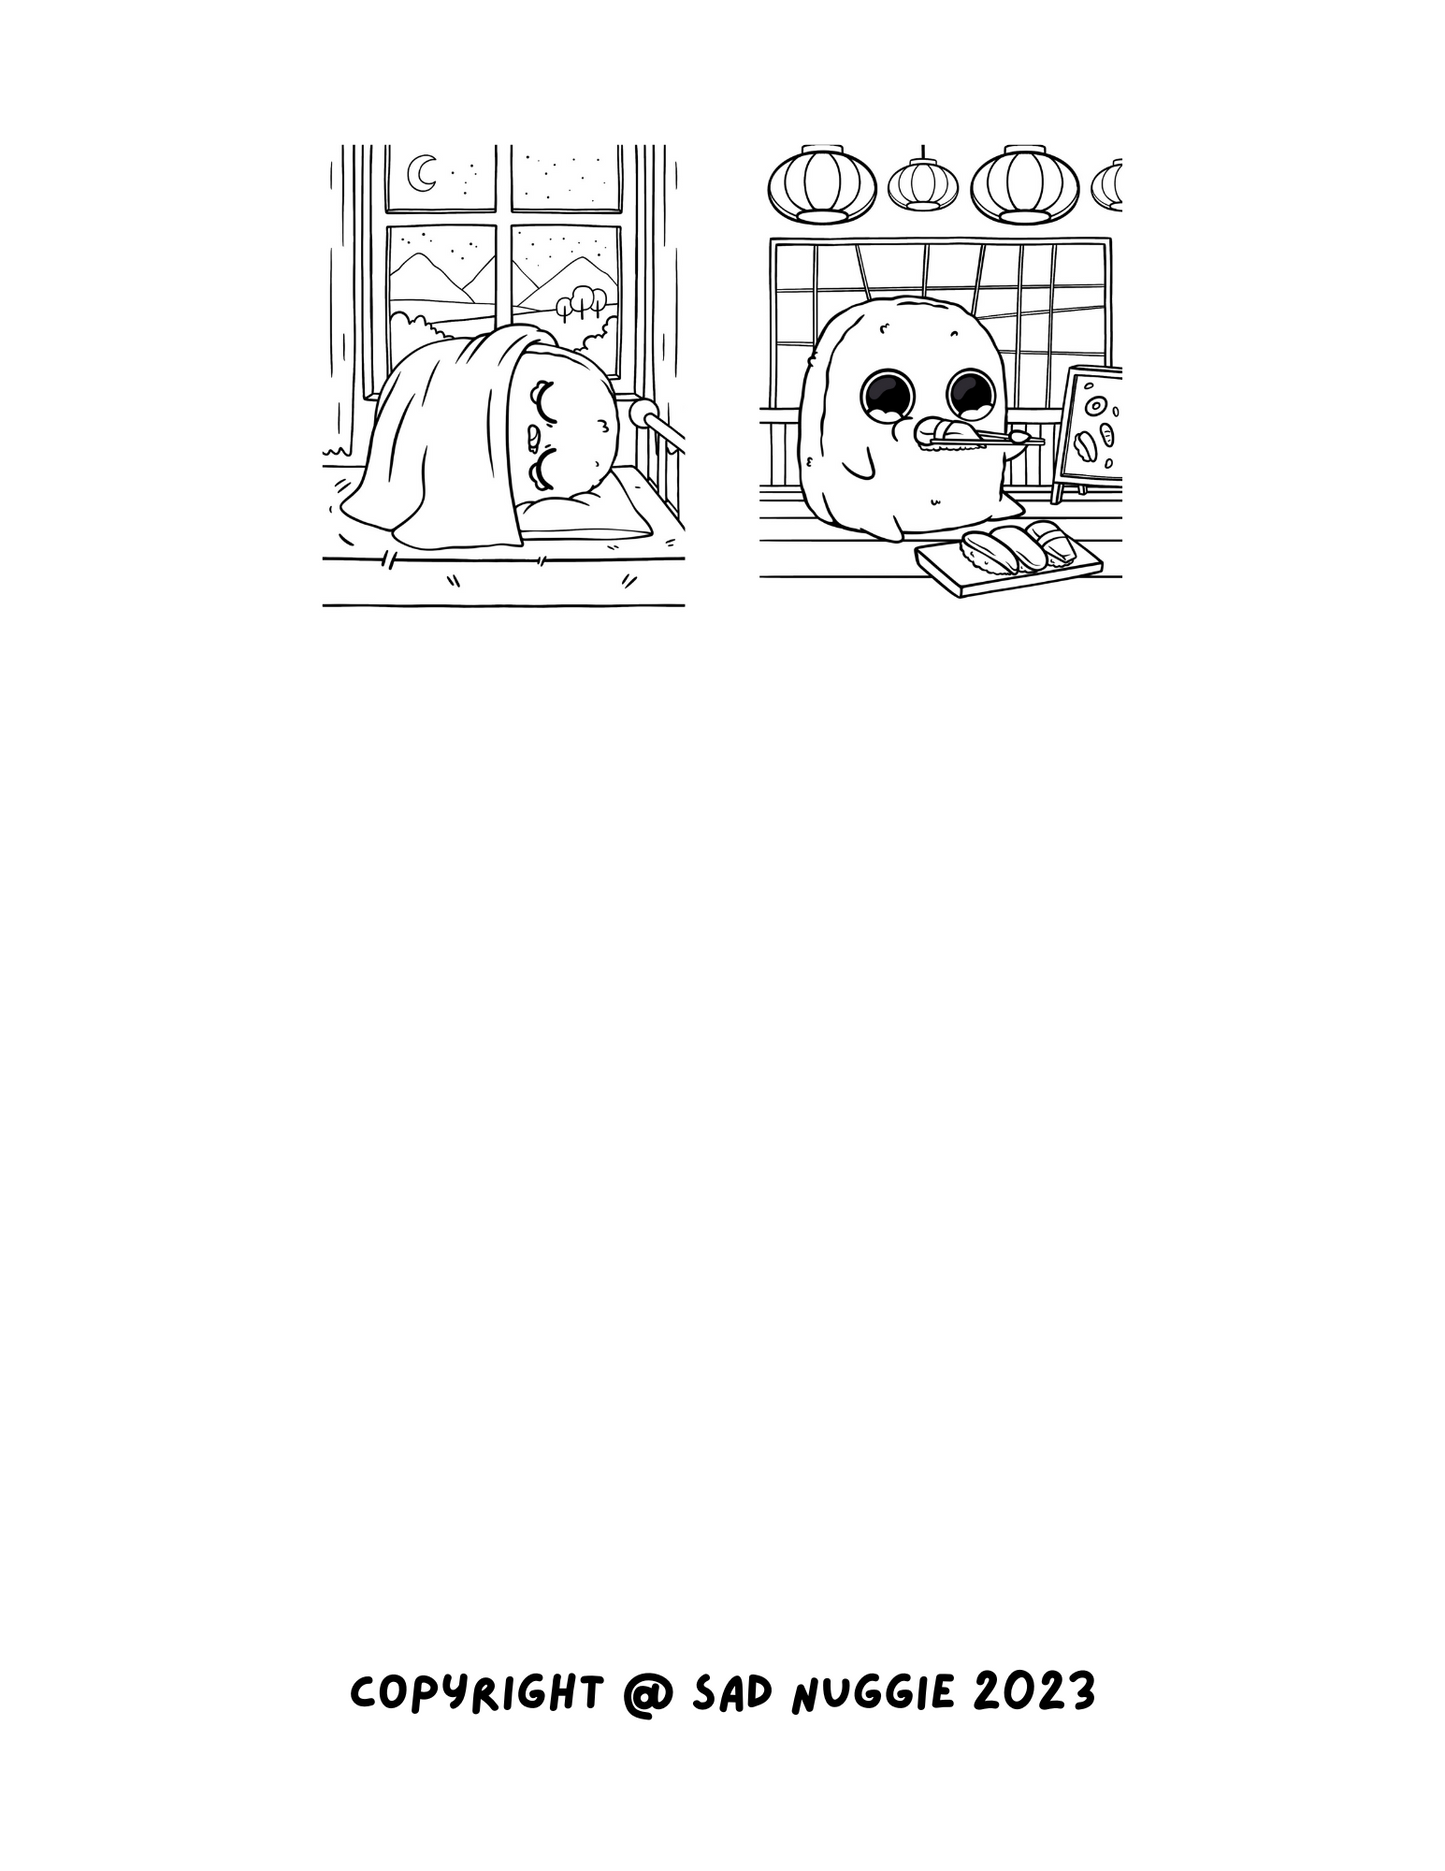 Sad Nuggie Coloring Book: Volume 1 (Digital Print File)